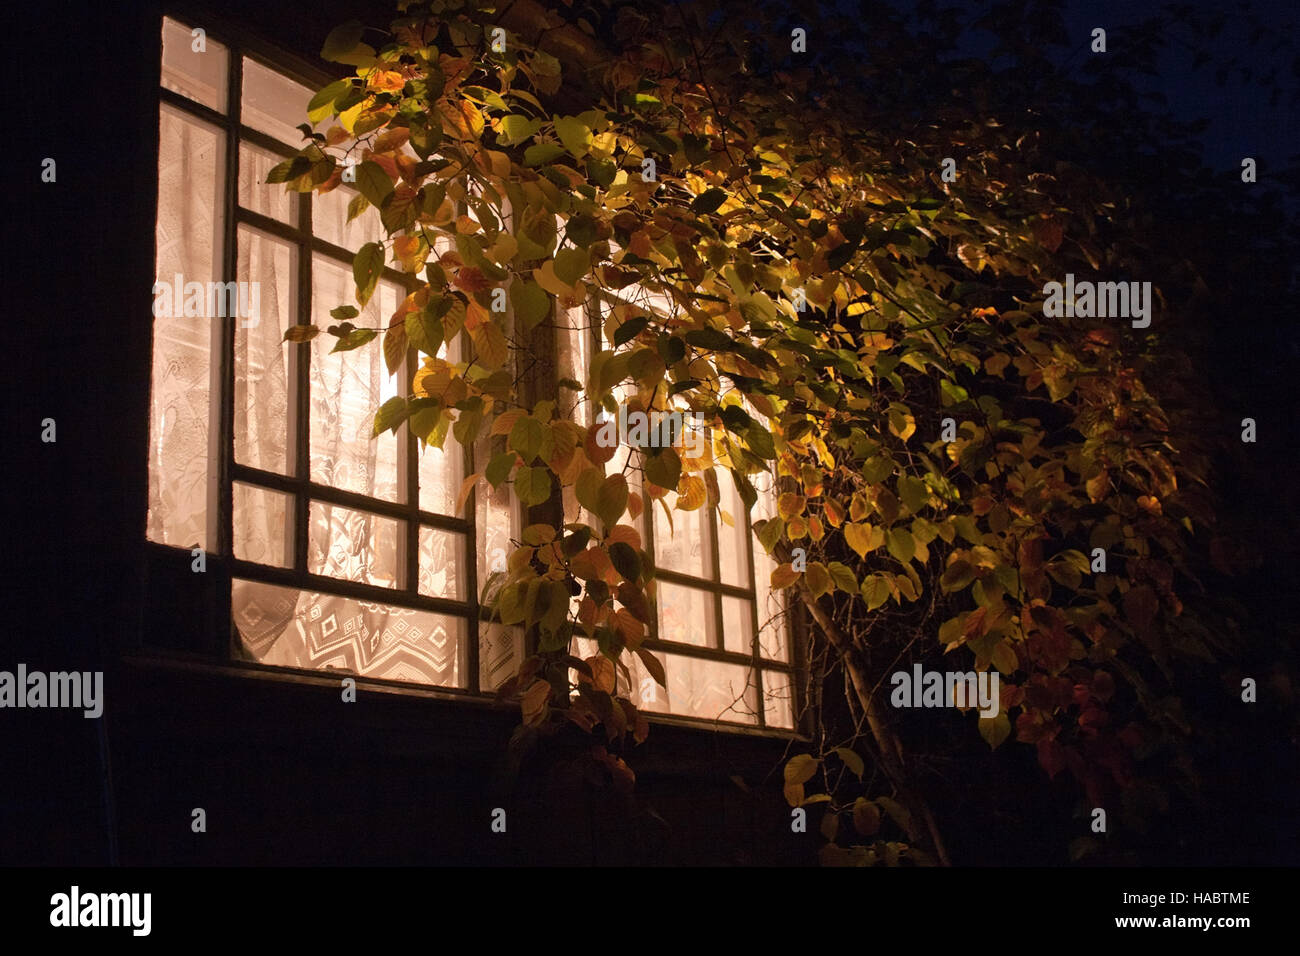 light in veranda window among night darkness Stock Photo